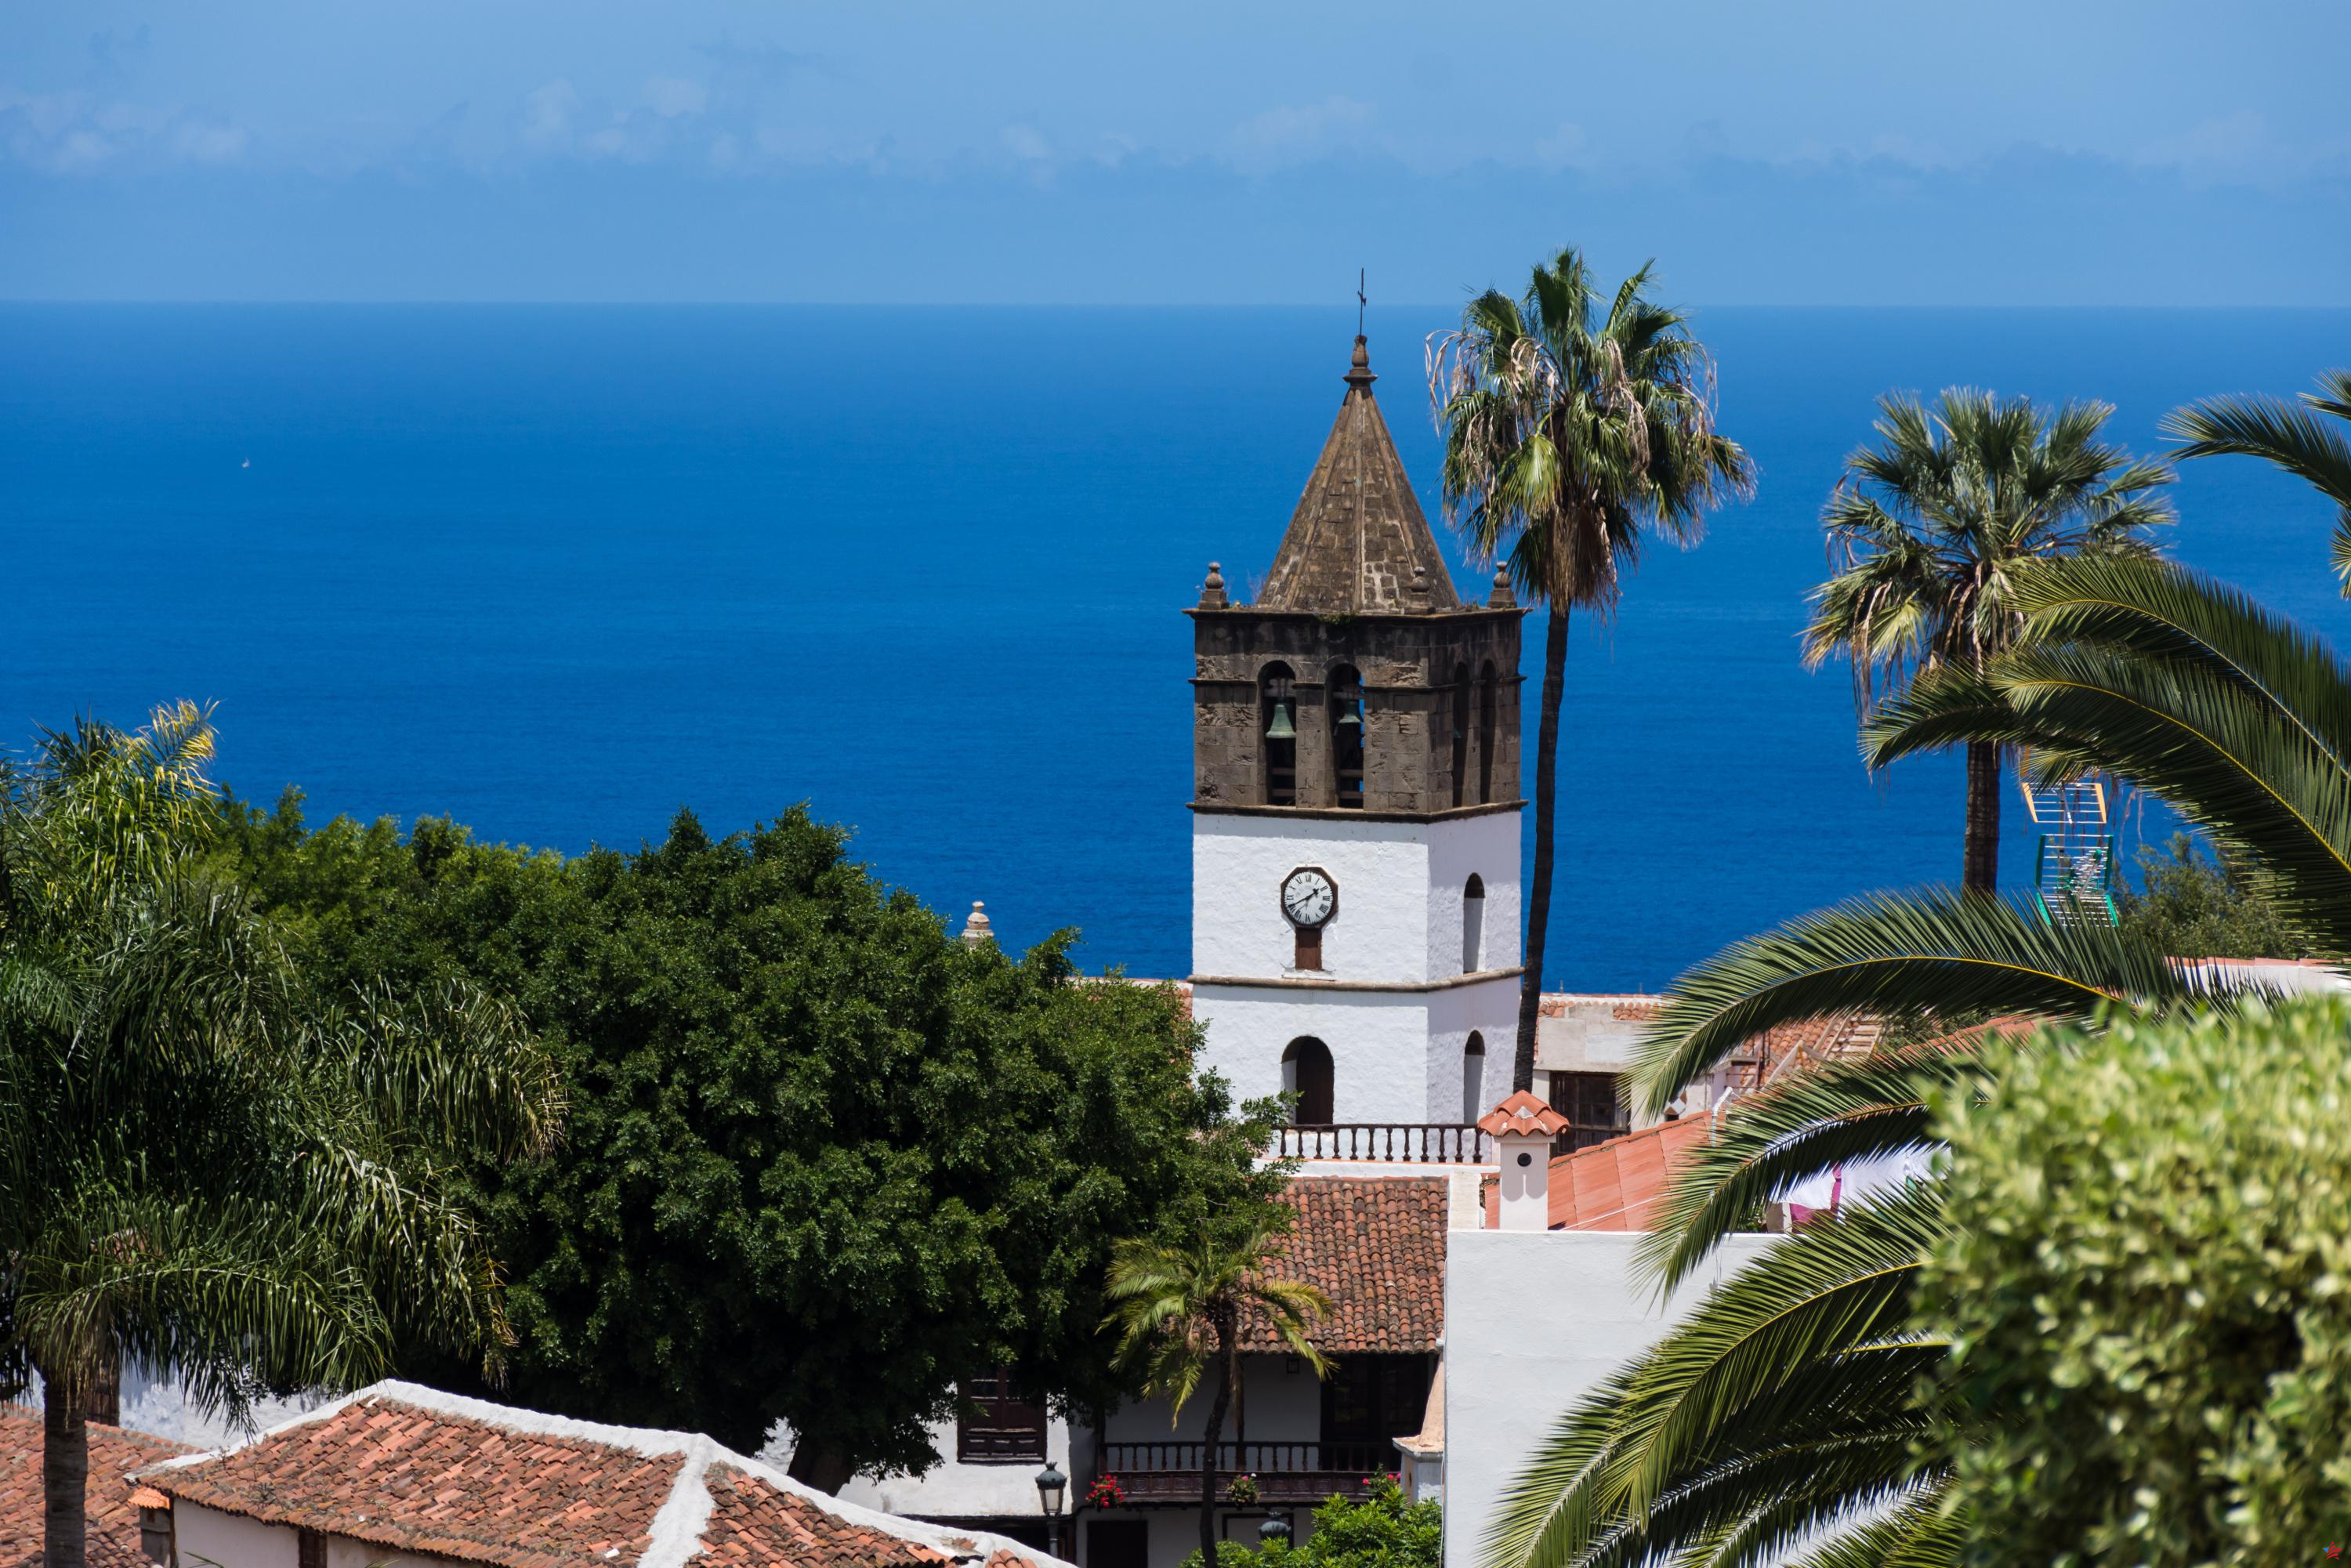 Atrae cada año a más franceses: ¿cuál es el secreto de este archipiélago español?